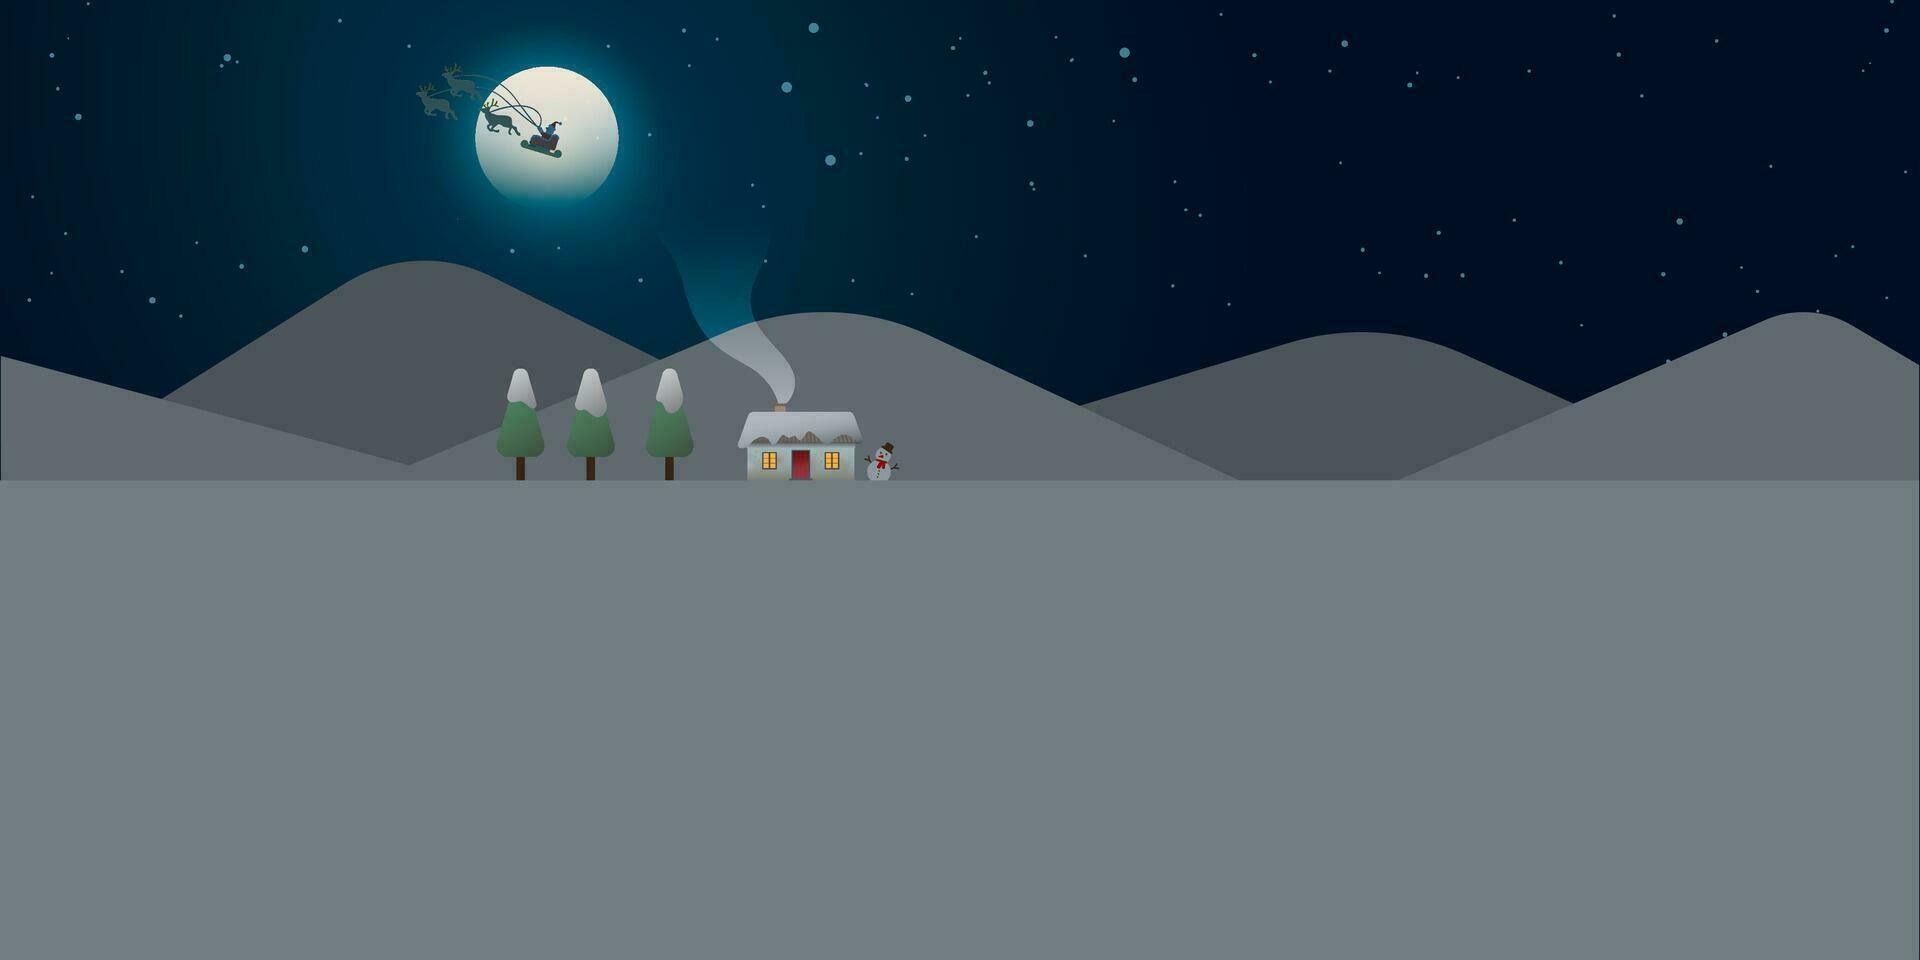 Kerstmis nacht met log cabine, sneeuwman en dennen Woud in sneeuwlandschap vlak ontwerp vector illustratie. Kerstmis groet kaart sjabloon met blanco ruimte.